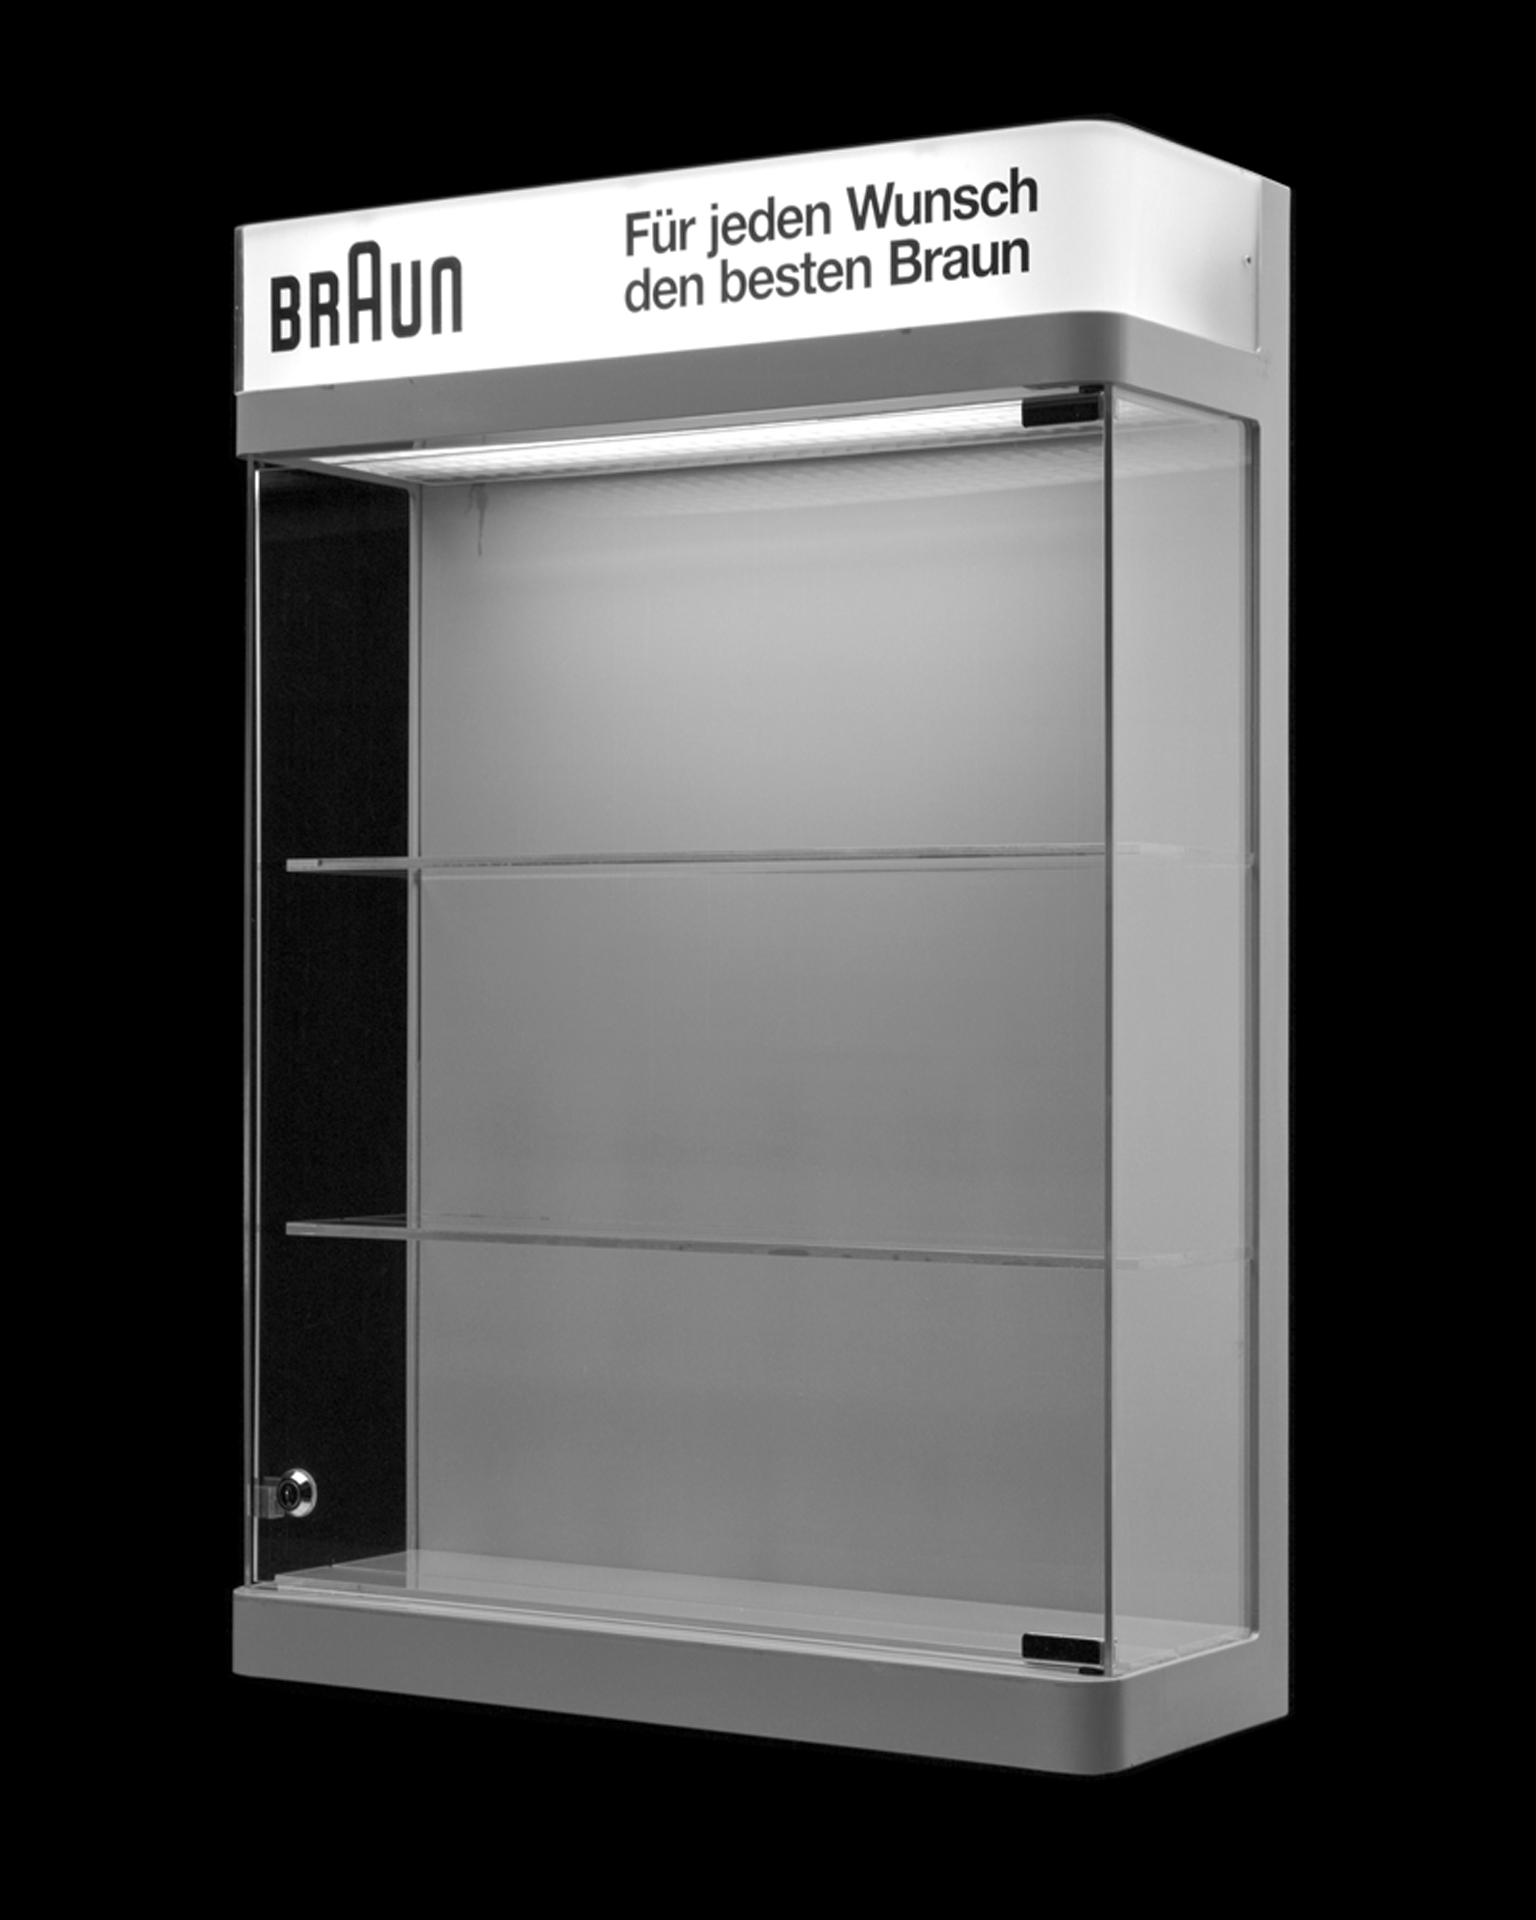 A photograph by Christopher Williams titled Display vitrine (Braun - FuÃàr jeden Wunsch den besten Braun), dated 2013.